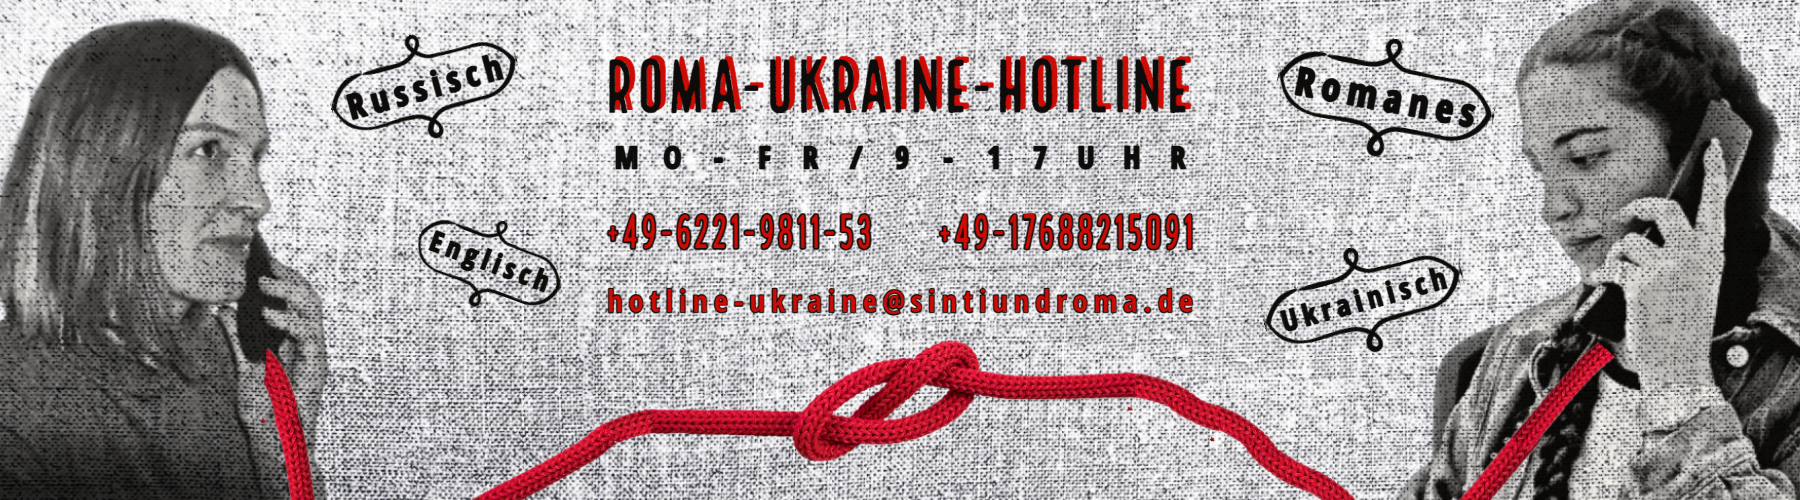 Roma-Ukraine-Hotline; Montag bis Freitag, 9 bis 17 Uhr. Telefon: +49 6221 981153, +49 176 88215091, hotline-ukraine@sintiundroma.de; Russisch, Romanes, Englisch, Ukrainisch